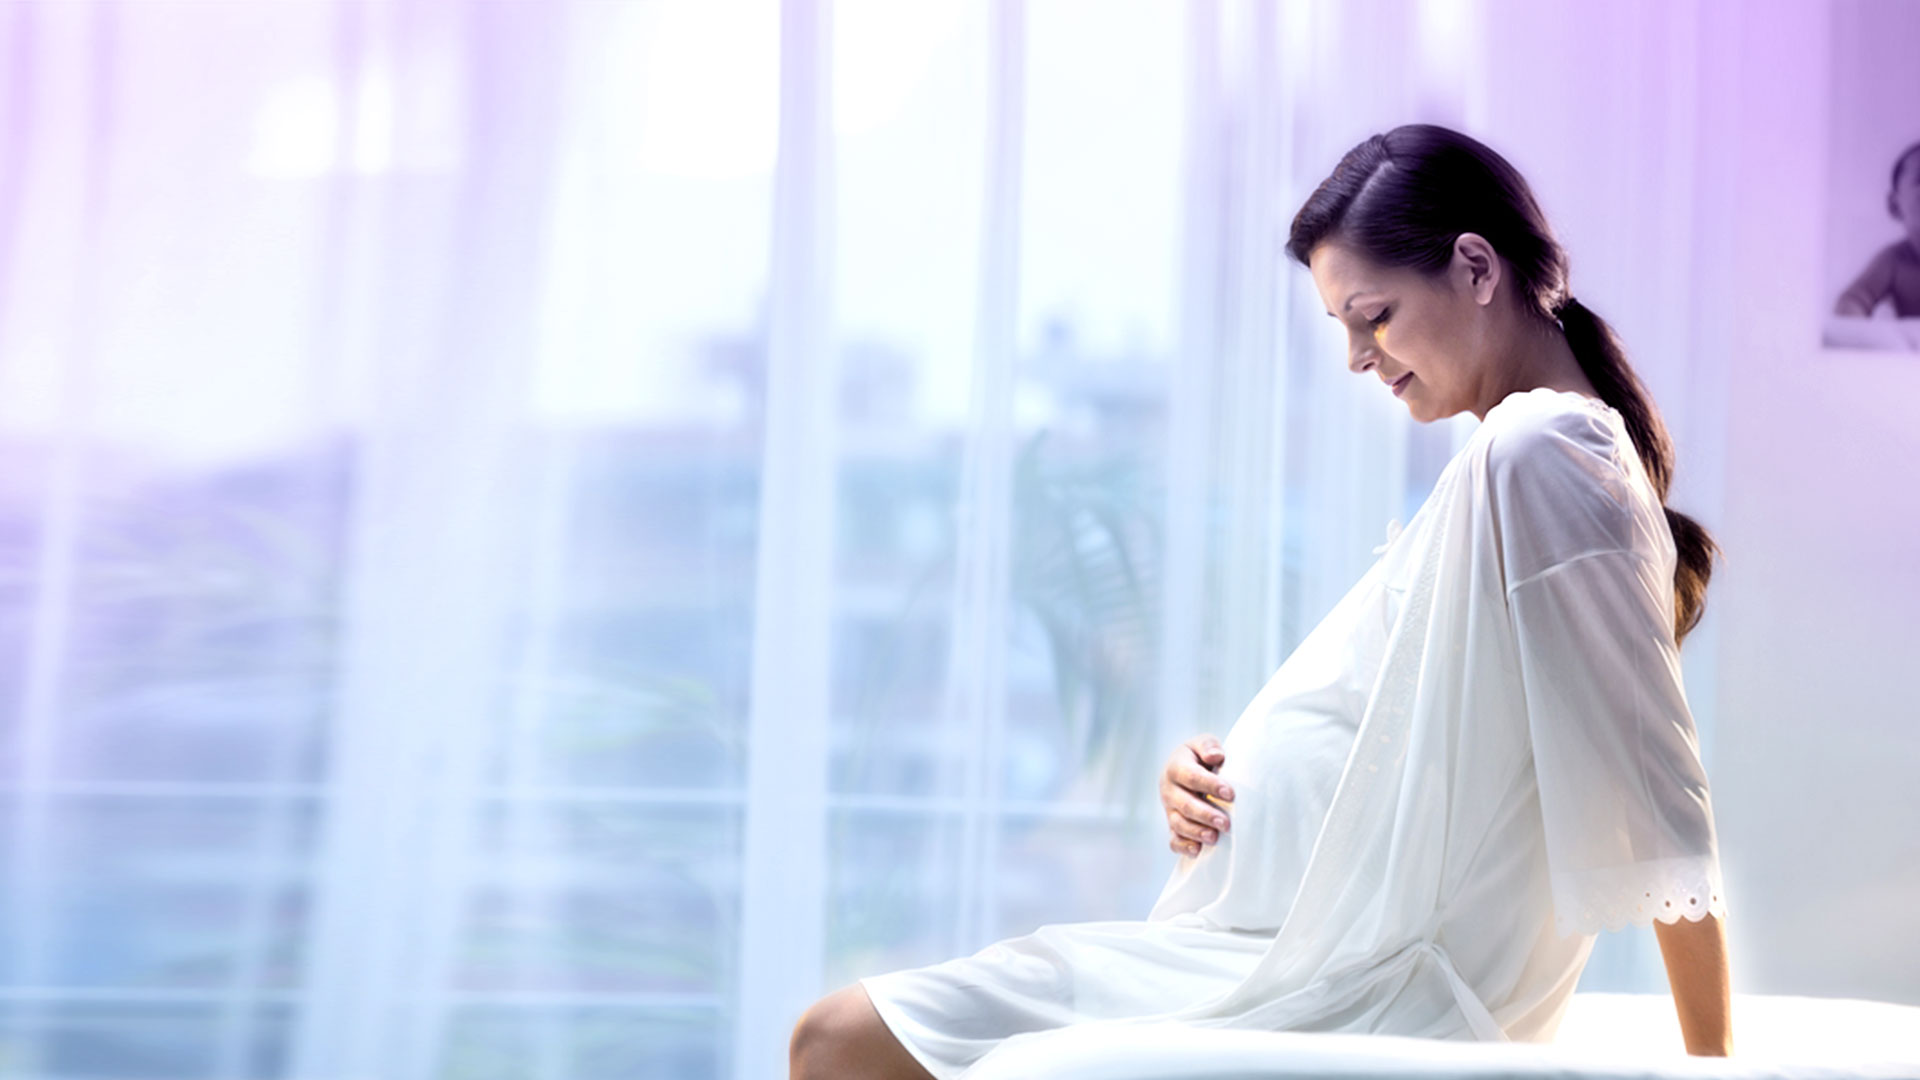 لماذا تختلف اعراض الحمل من امرأة لاخرى